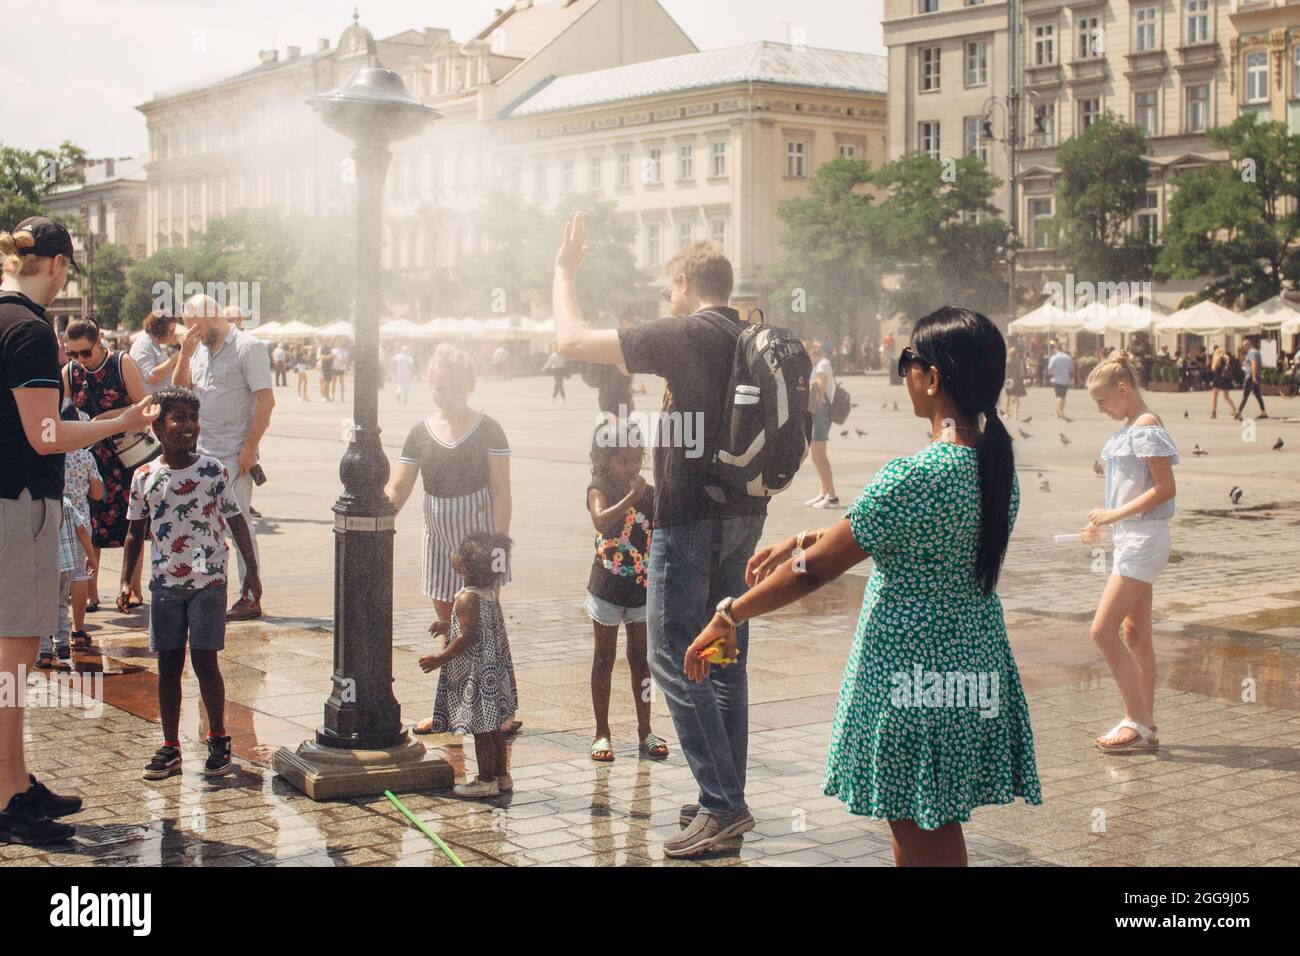 CRACOVIA, POLONIA - 21 luglio 2019: Sistema di acqua nebulizzata per il raffreddamento in una piazza principale di Cracovia nelle calde giornate estive, i turisti sono vicini all'appannamento Foto Stock